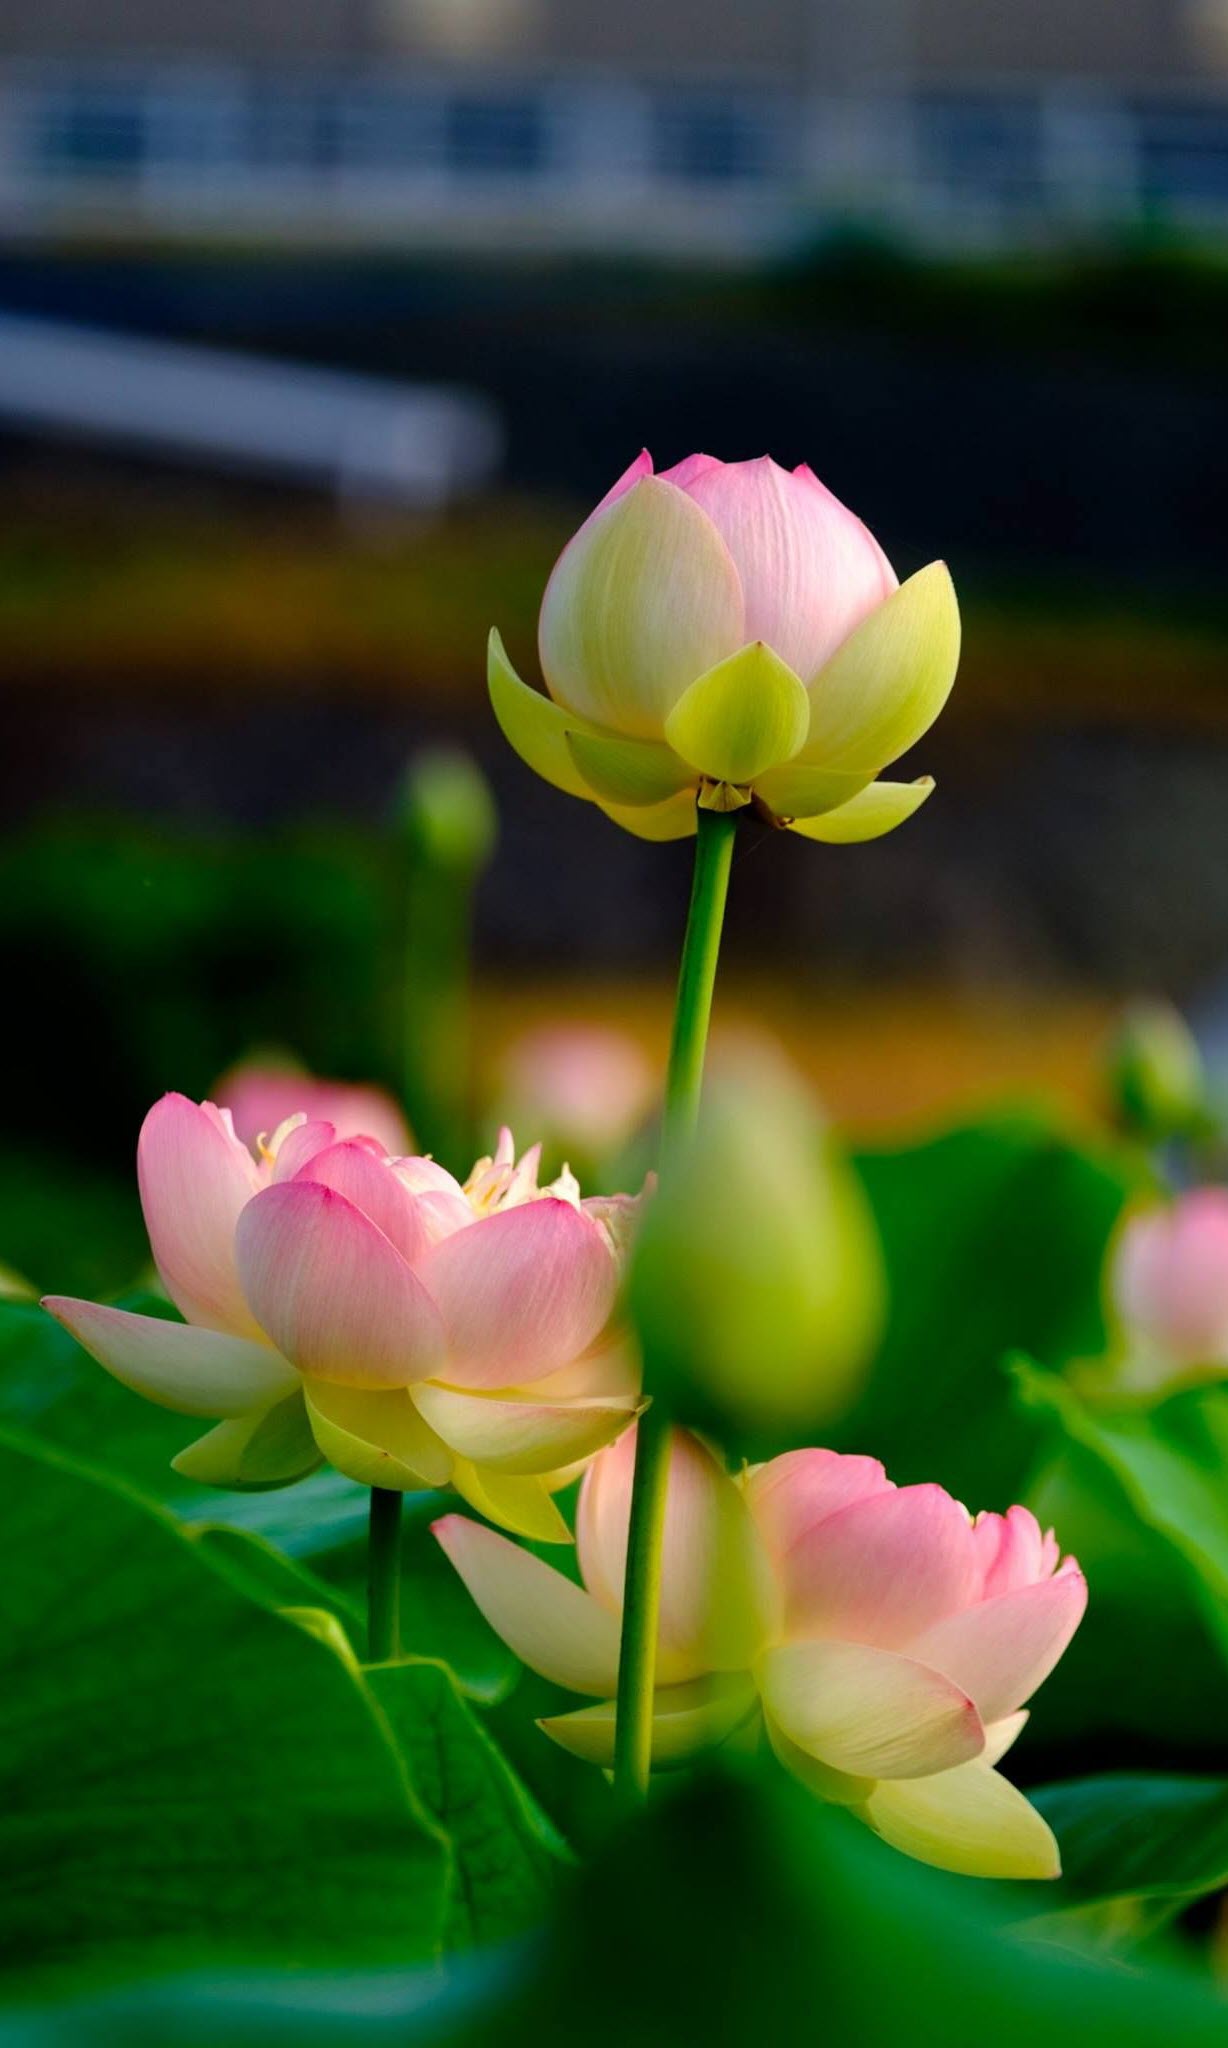 Hoa sen là biểu tượng của sự hòa hợp và nghệ thuật tại Việt Nam. Bức ảnh với hoa sen đẹp ngỡ ngàng sẽ làm bạn ngỡ ngàng với sự tinh tế và sắc nét của nó.